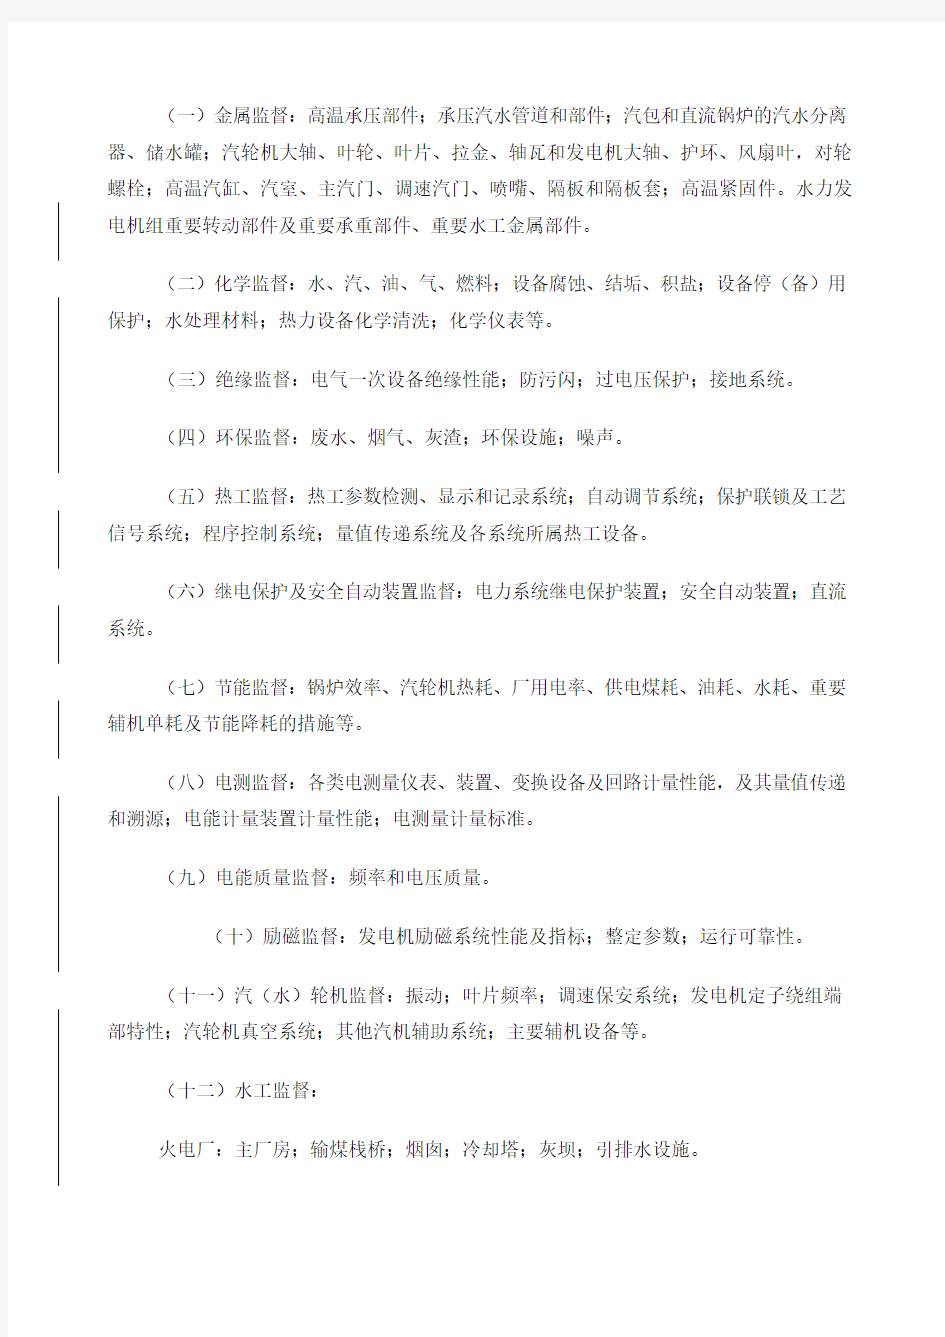 中国华电集团公司技术监督管理办法A版